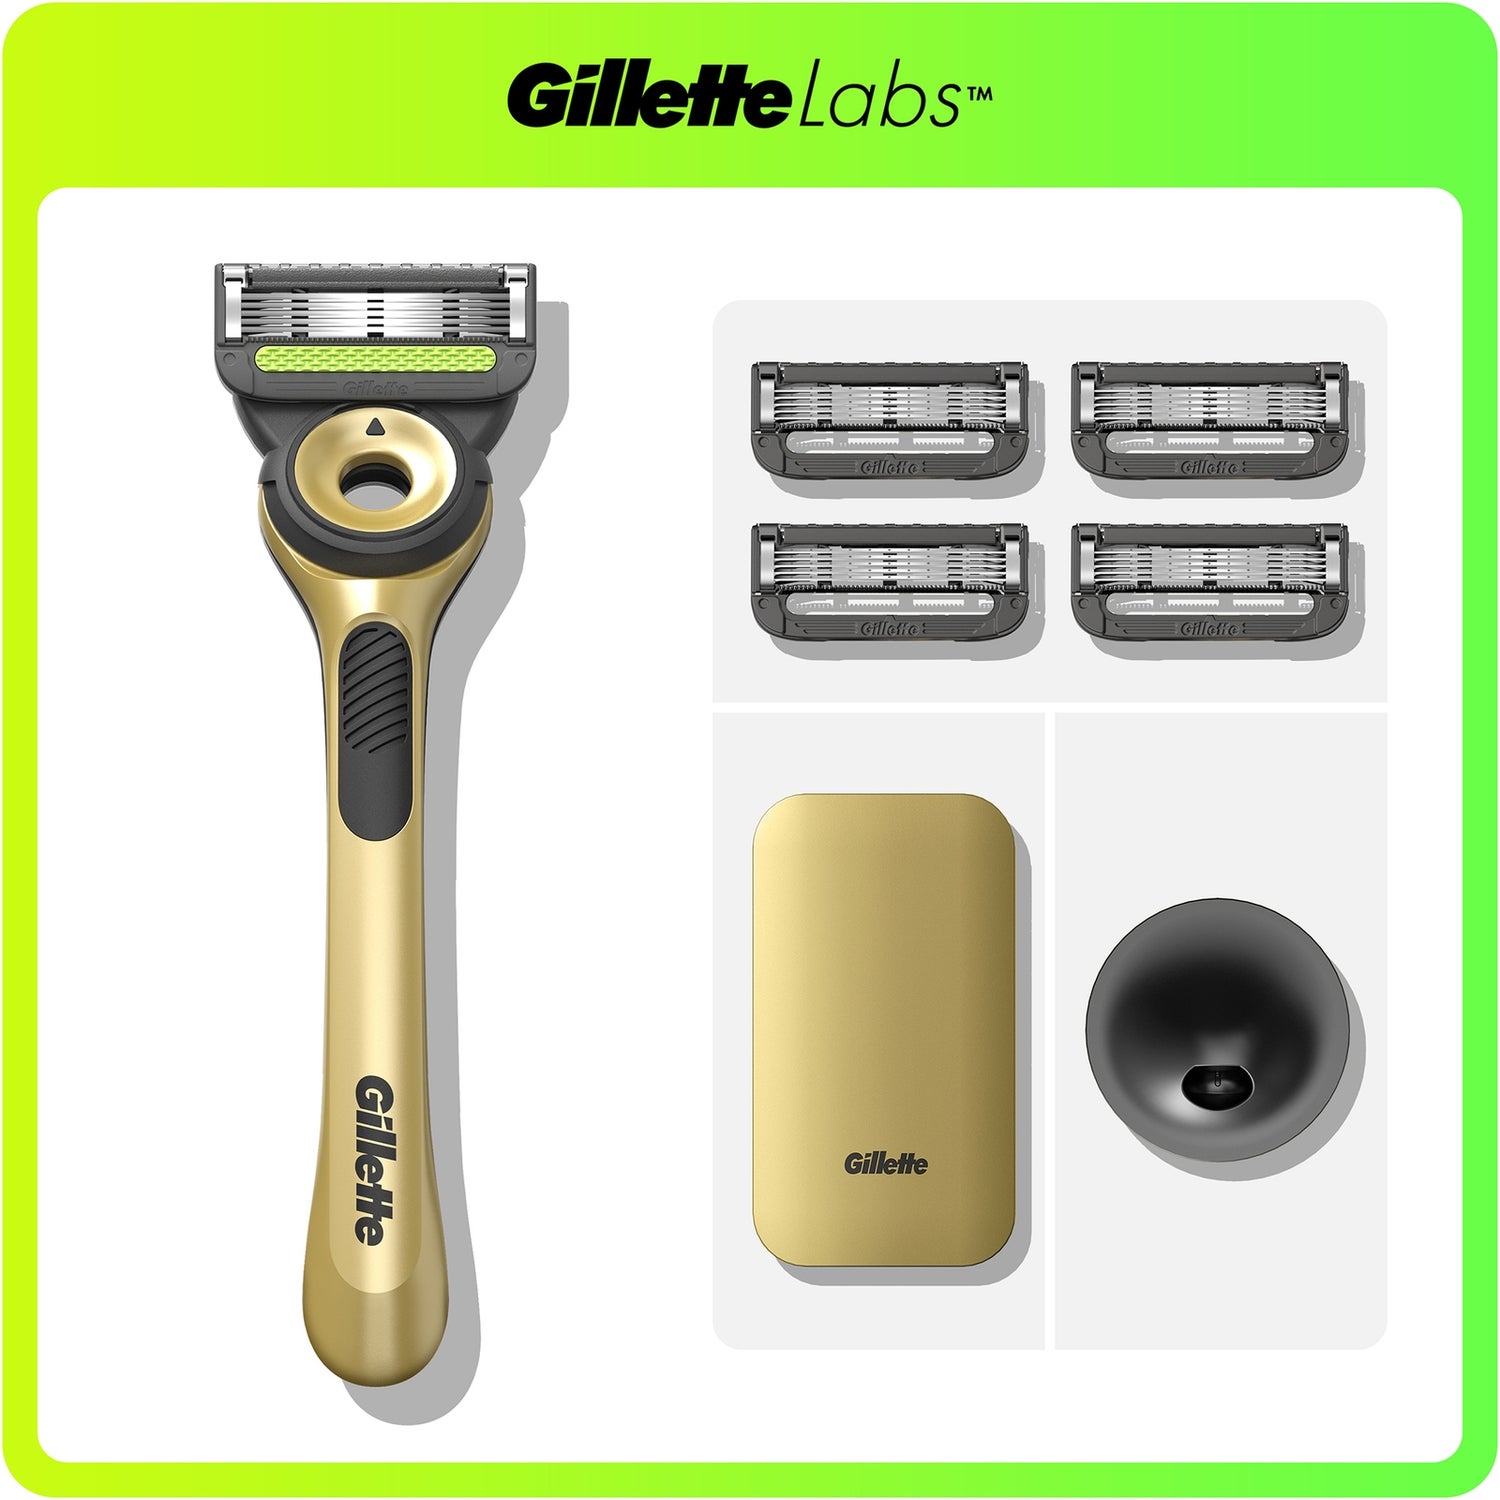 Gillette Labs Razor Champion Gold Edition with 4 razor Blades & Case